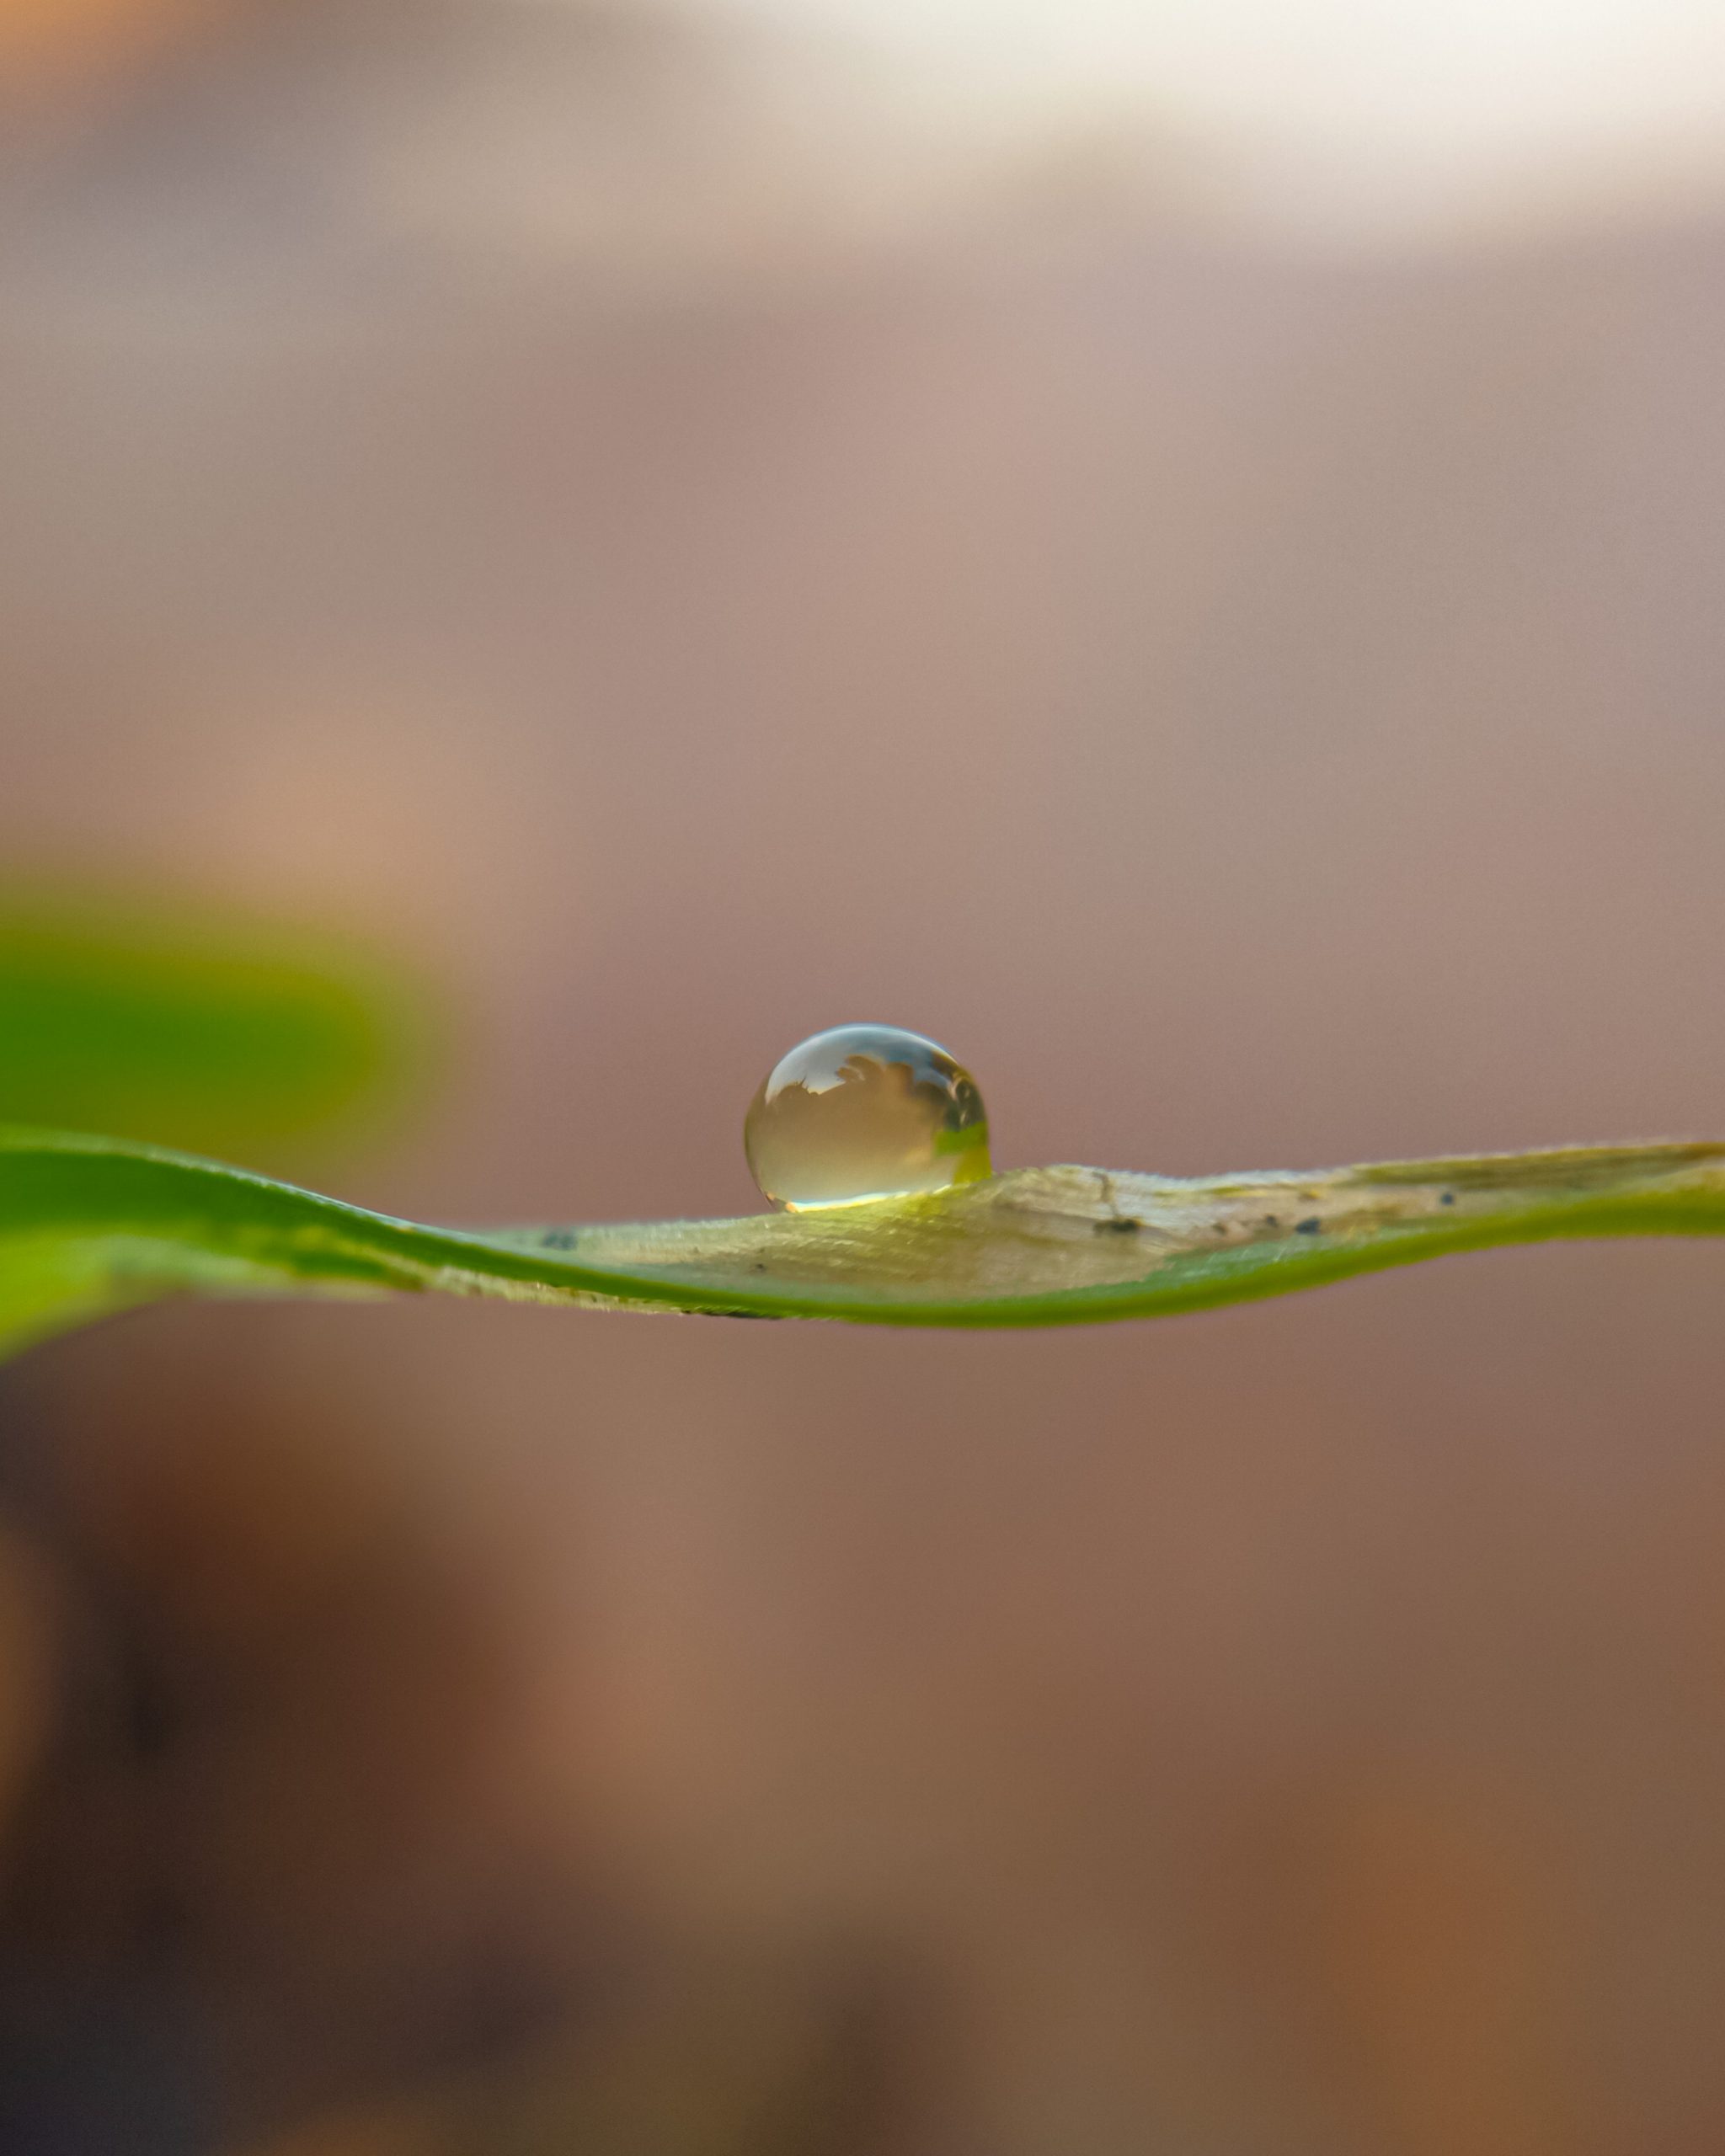 A waterdrop on a leaf